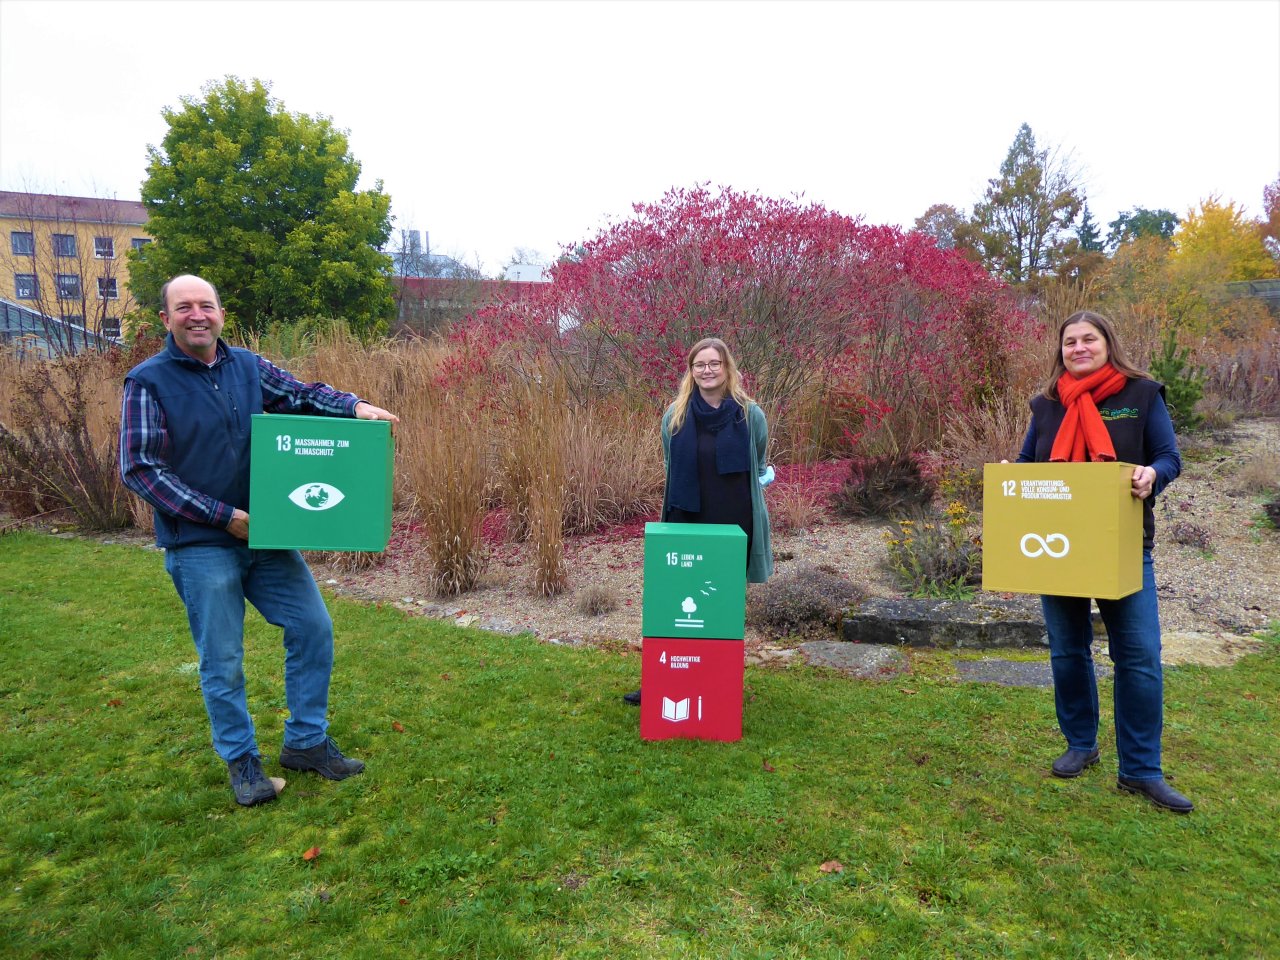 Das Kernteam des LehrLernGartens (LLG) im Botanischen Garten Würzburg zeigt einige der SDGs, die im Fokus der Bildungsarbeit im LLG stehen.